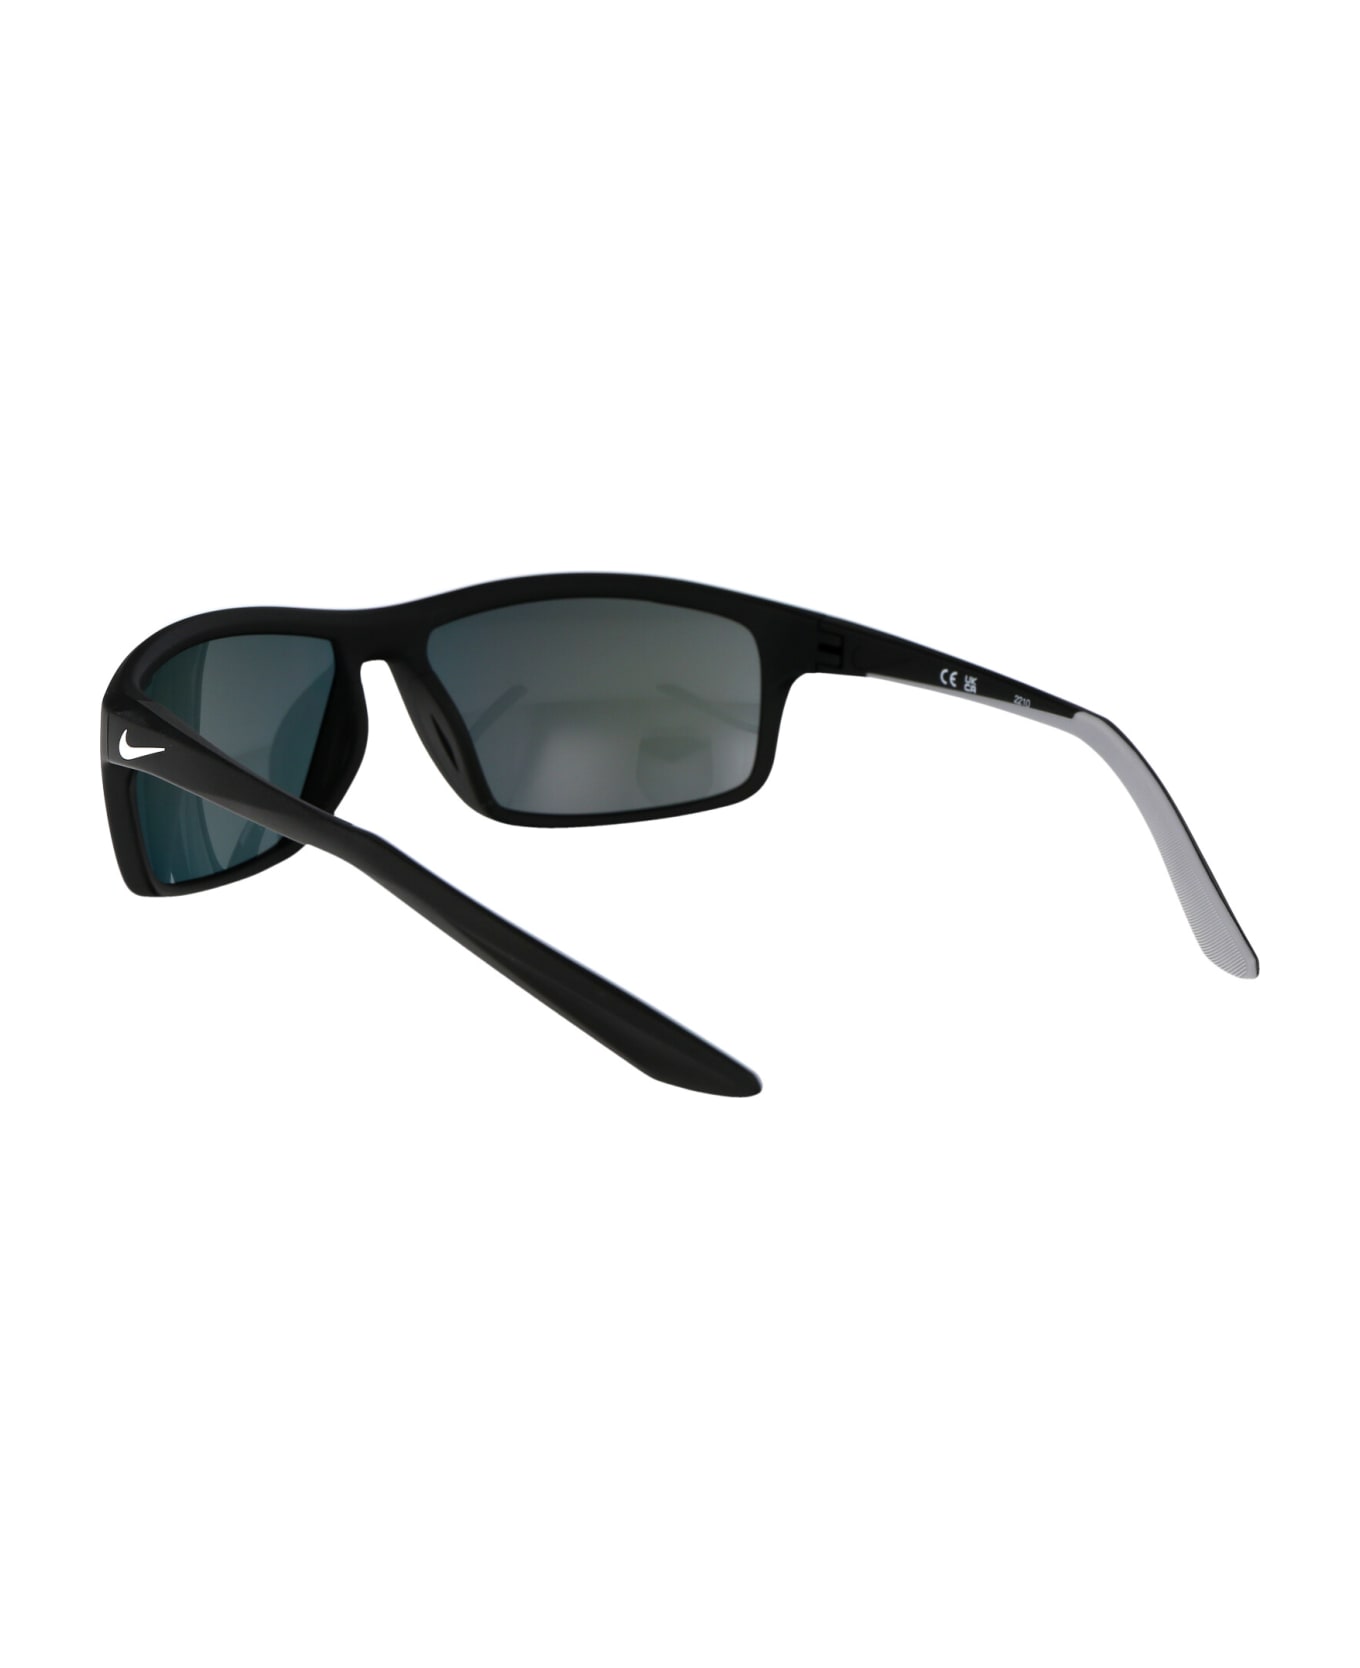 Nike Adrenaline 22 E Sunglasses - 010 BLACK WHITE NOIR BLANC サングラス